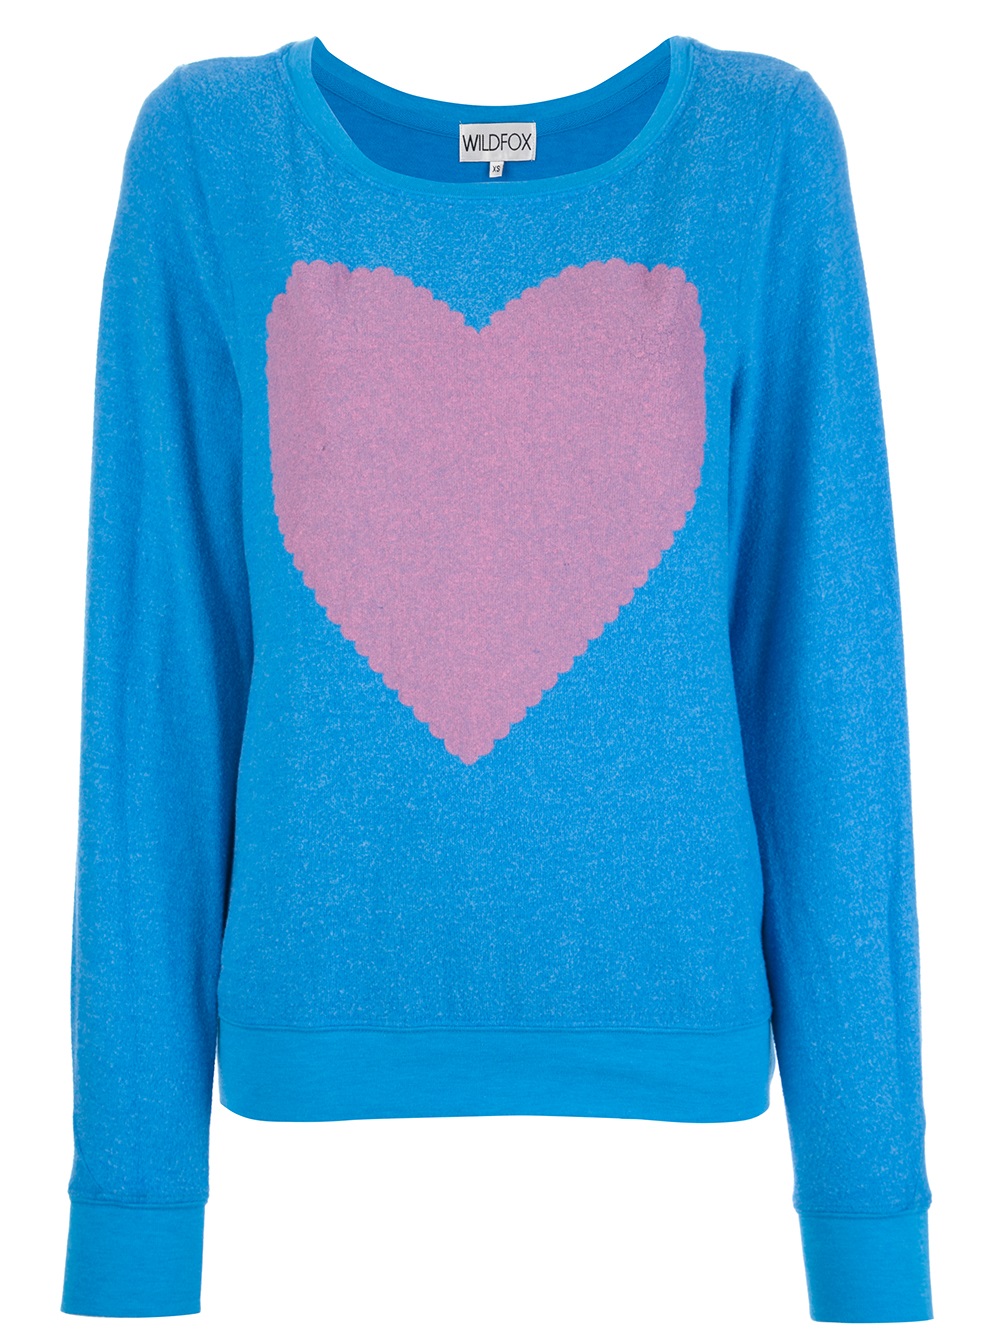 beven Spruit Gaan wandelen Wildfox Heart Sweater in Blue | Lyst